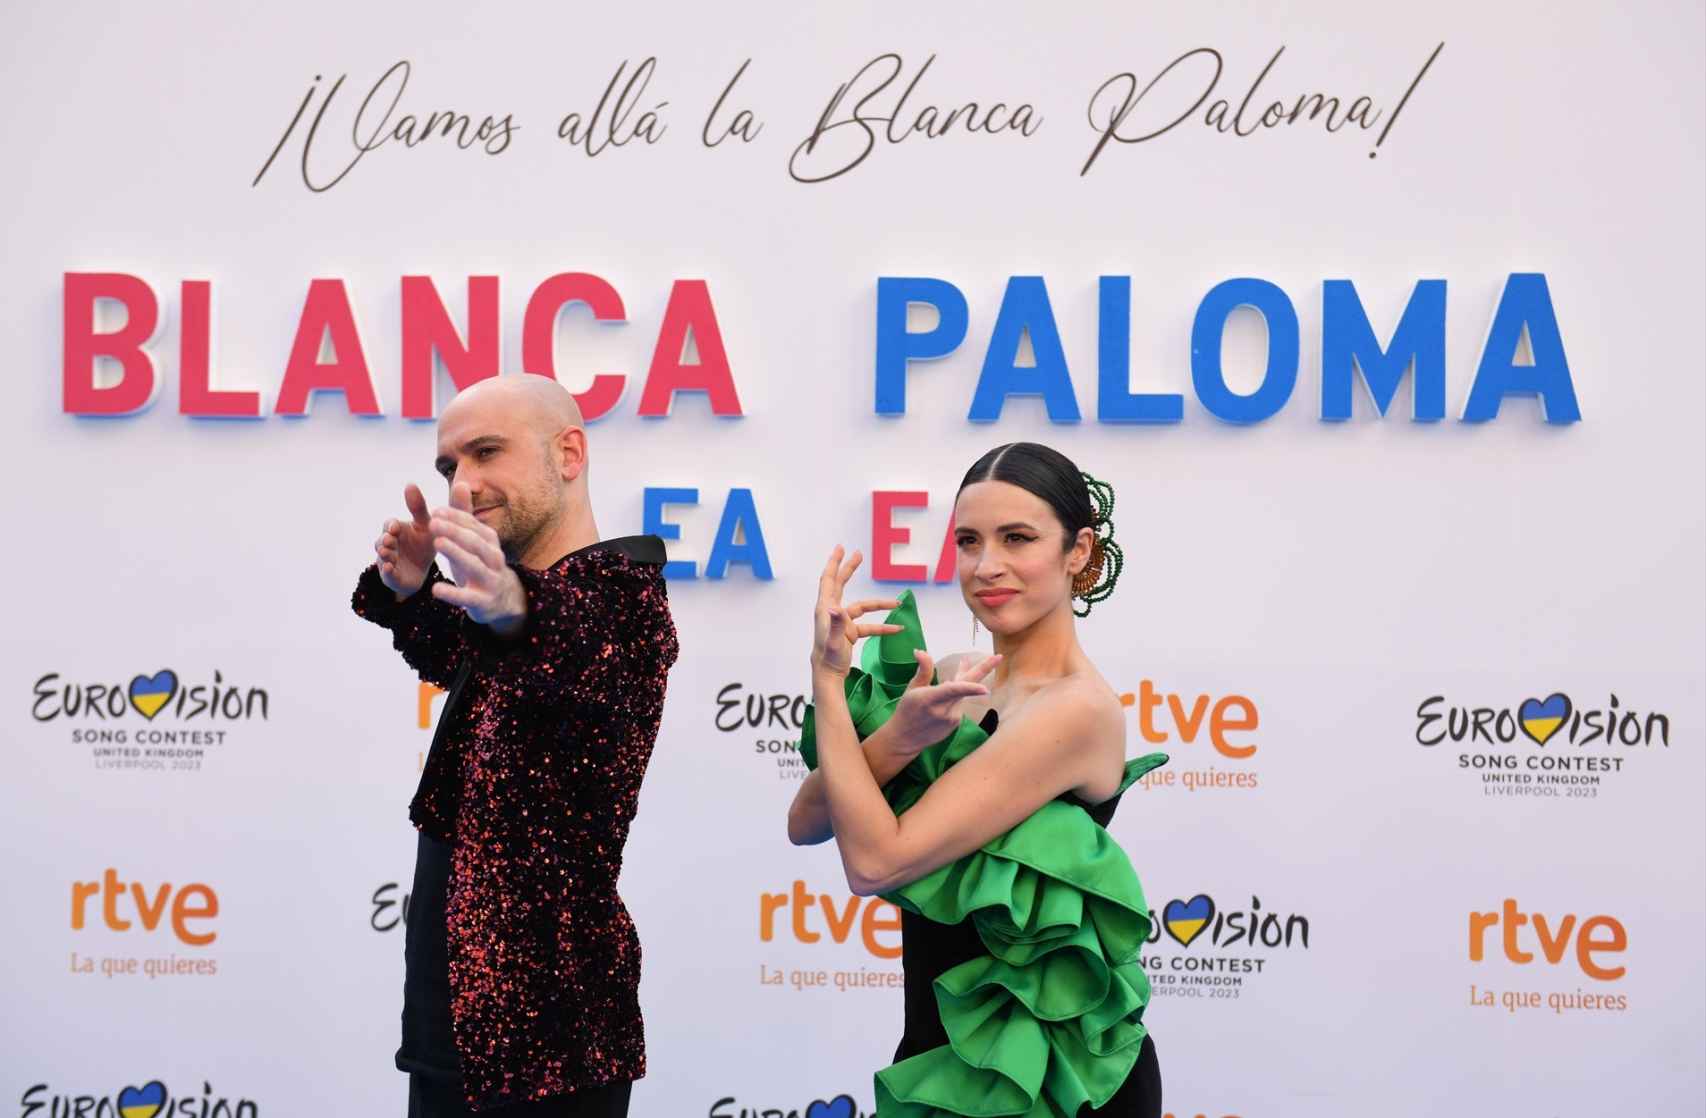 La cantante Blanca Paloma y el creador de la canción 'Eaea', Jose Pablo Polo, durante un evento de despedida antes de su viaje a Liverpool para representar a España en el Festival de Eurovisión 2023.